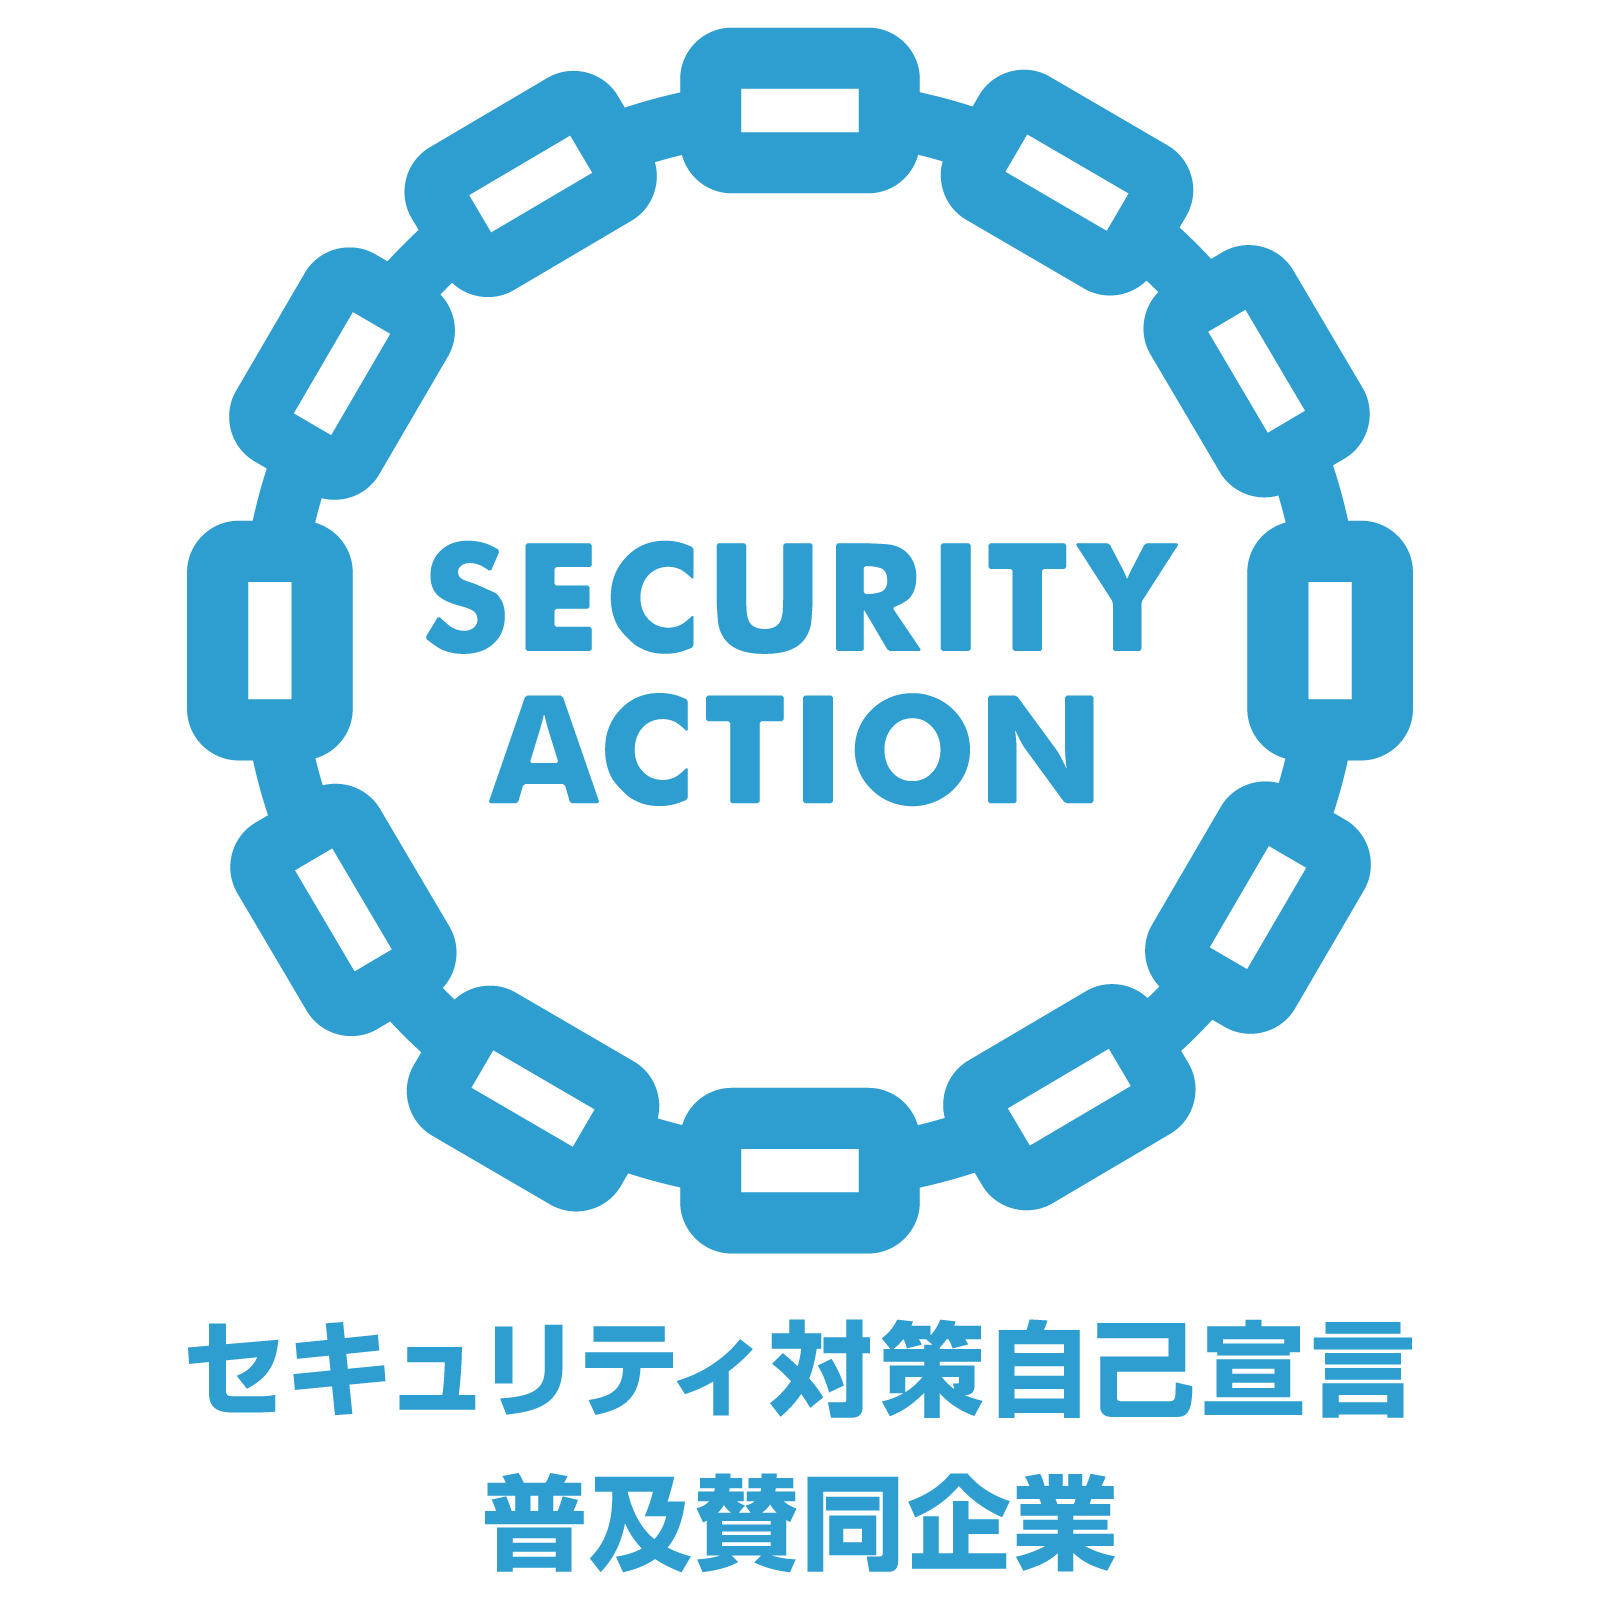 SECURITY ACTION 普及賛同企業